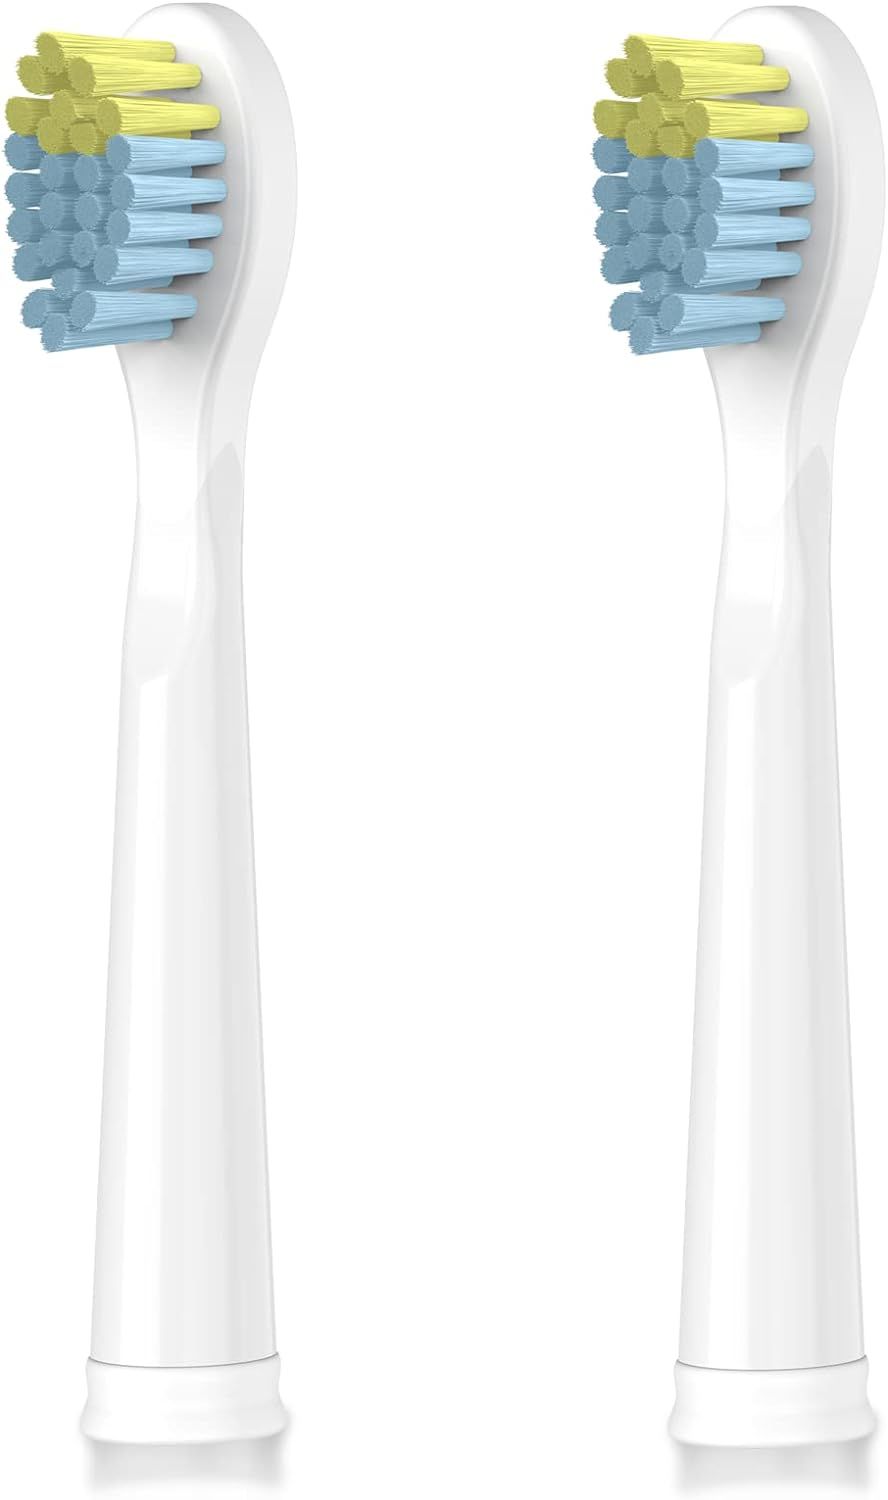 Dada-Tech Kinder Elektrische Zahnbürste Ersatzköpfe für DT-KE9 - Weiß